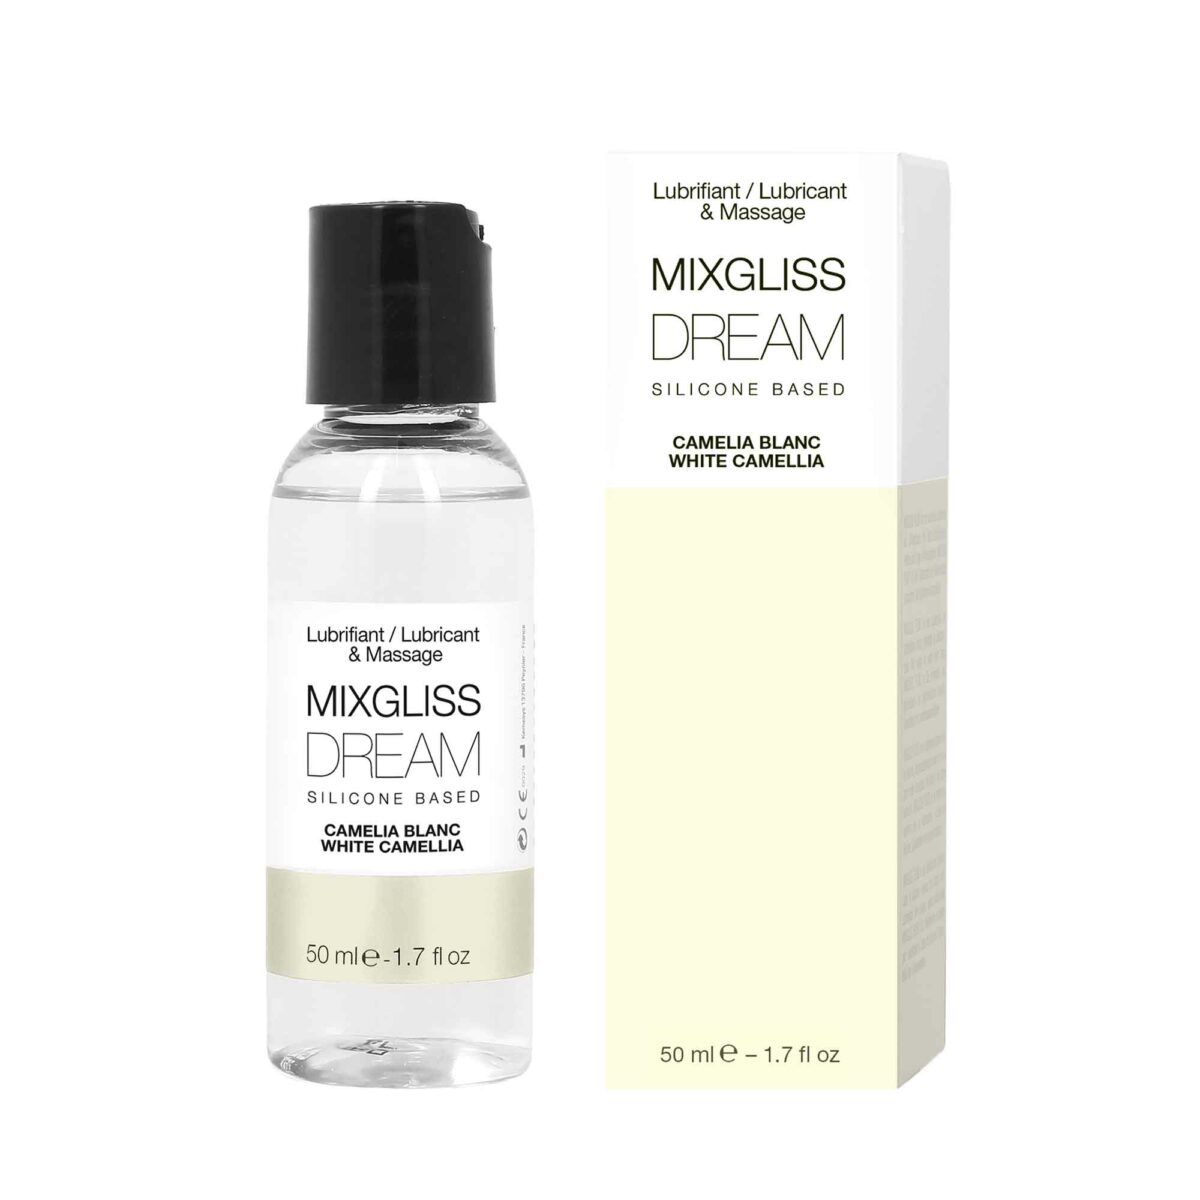 Silicone-based lubricant and massage oil, mixgliss lube dream White Camellia